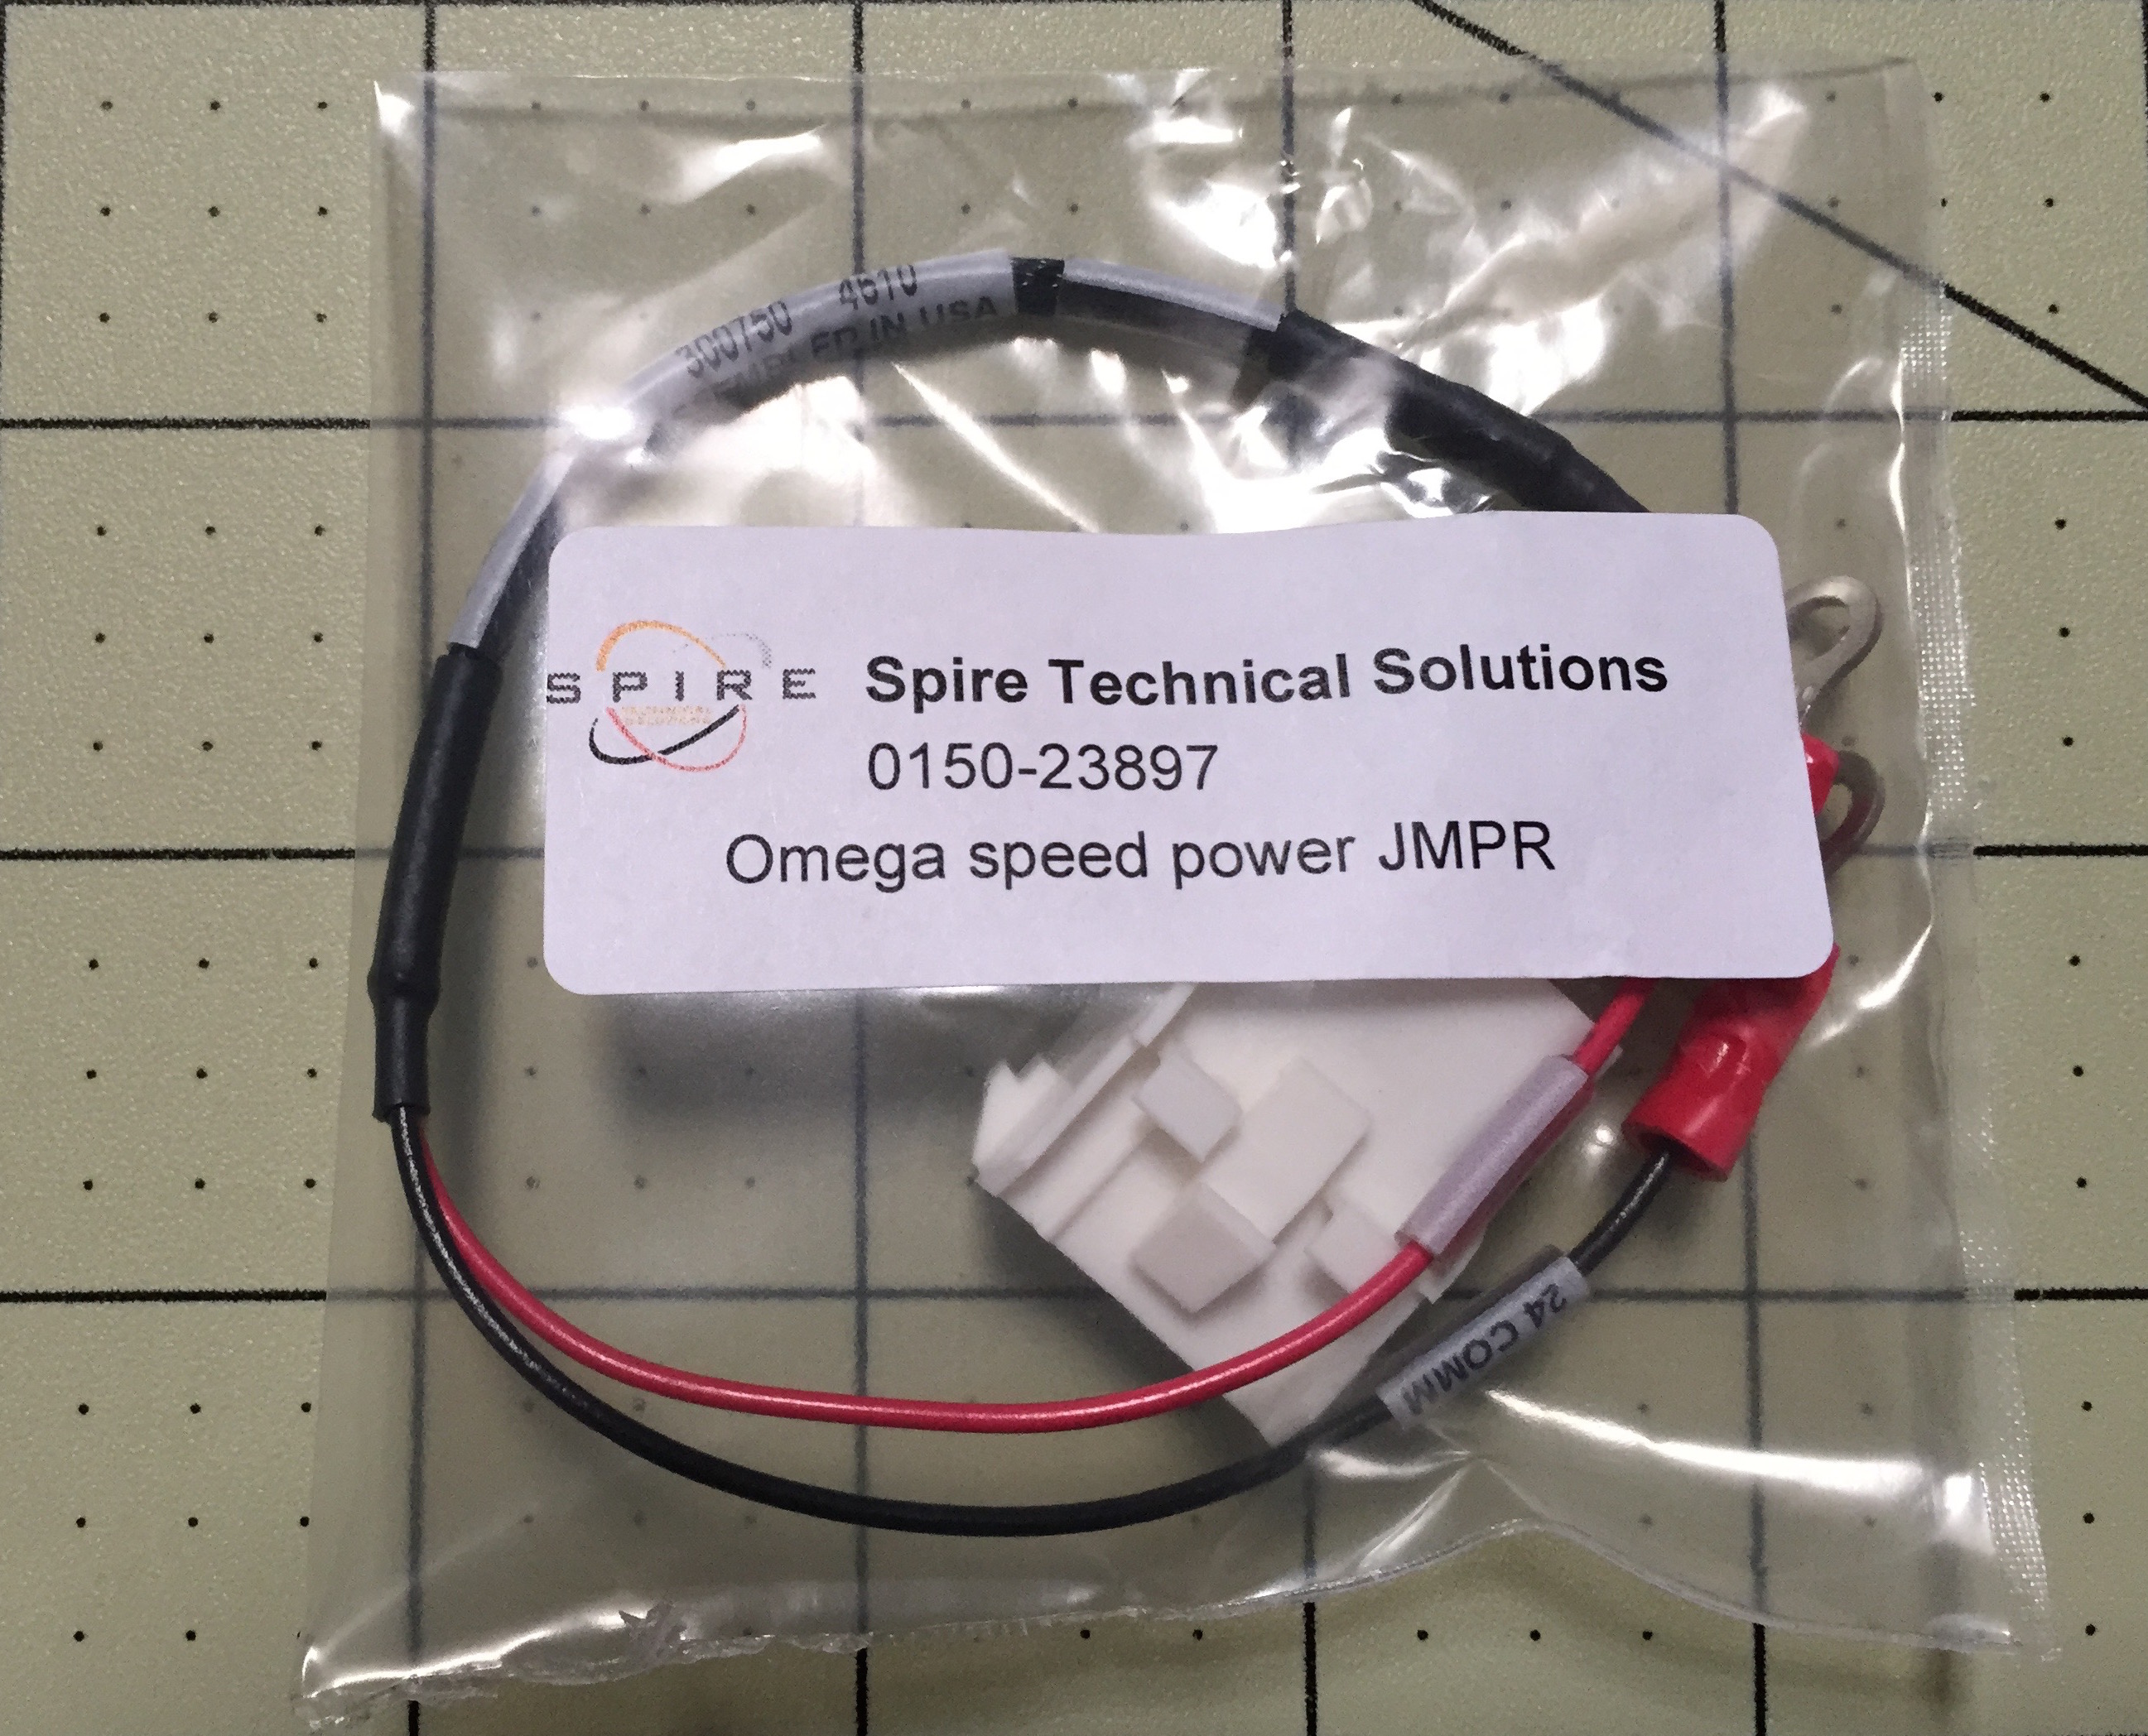 Omega speed power JMPR